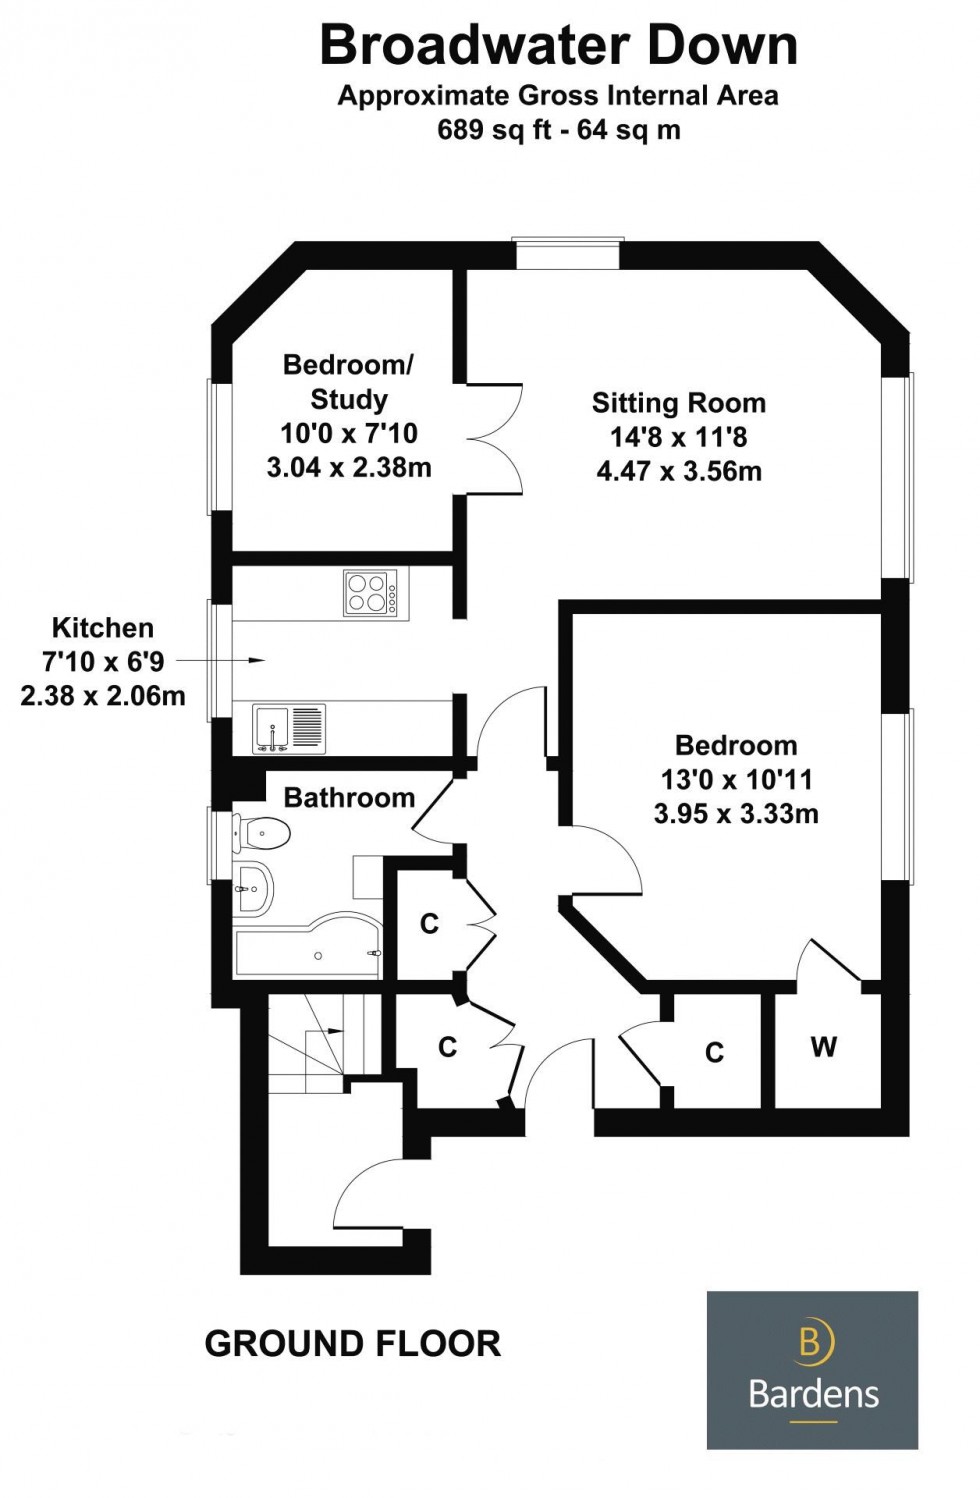 Floorplan for 1 Bedroom Ground Floor Apartment with Courtyard Garden & Parking, Broadwater Down, Tunbridge Wells